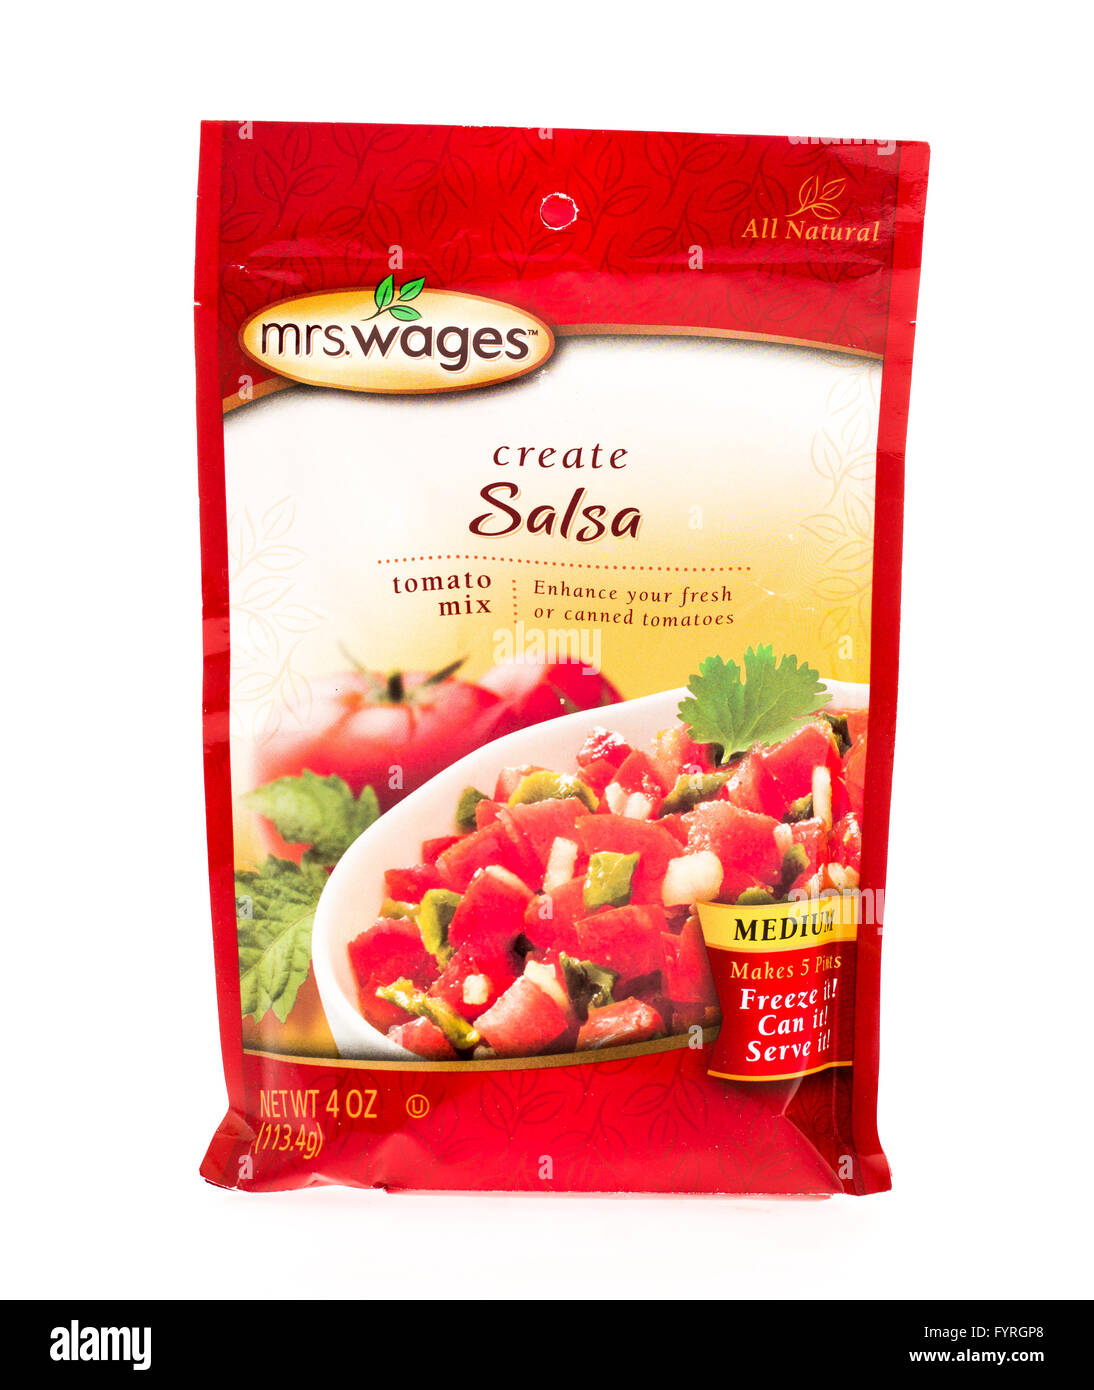 Winneconne, Wisconsin - 20. April 2015: Paket von Mrs Löhne Salsa-Mix für die Konservenindustrie verwendet. Stockfoto